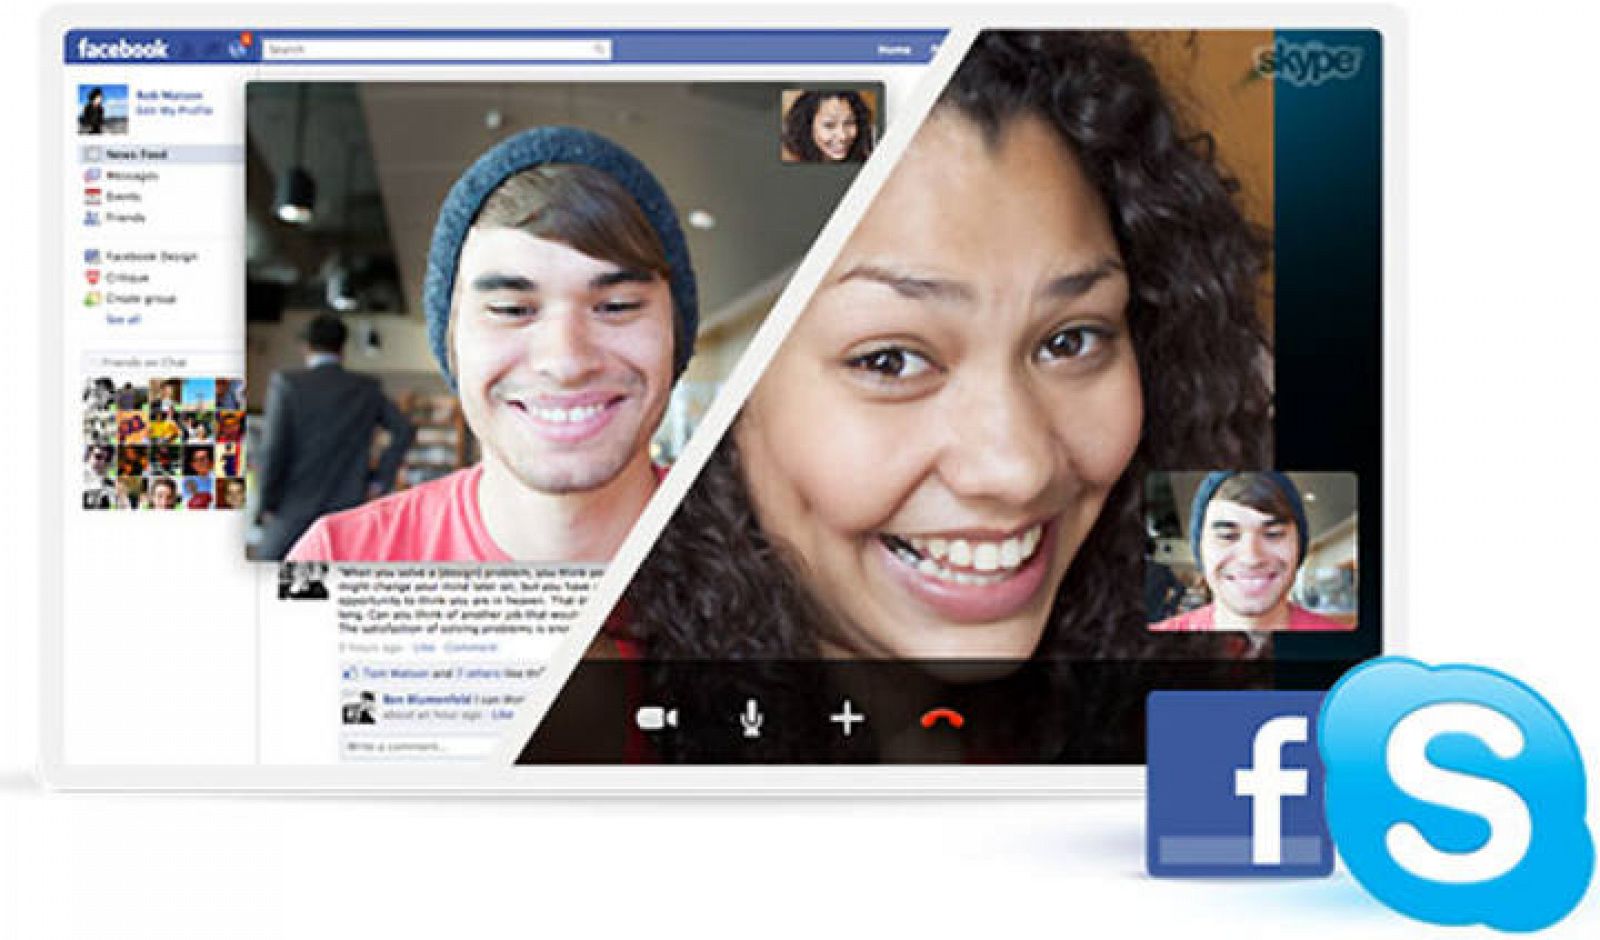 Skype permite realizar llamadas desde su servicio utilizando el perfil de Facebook